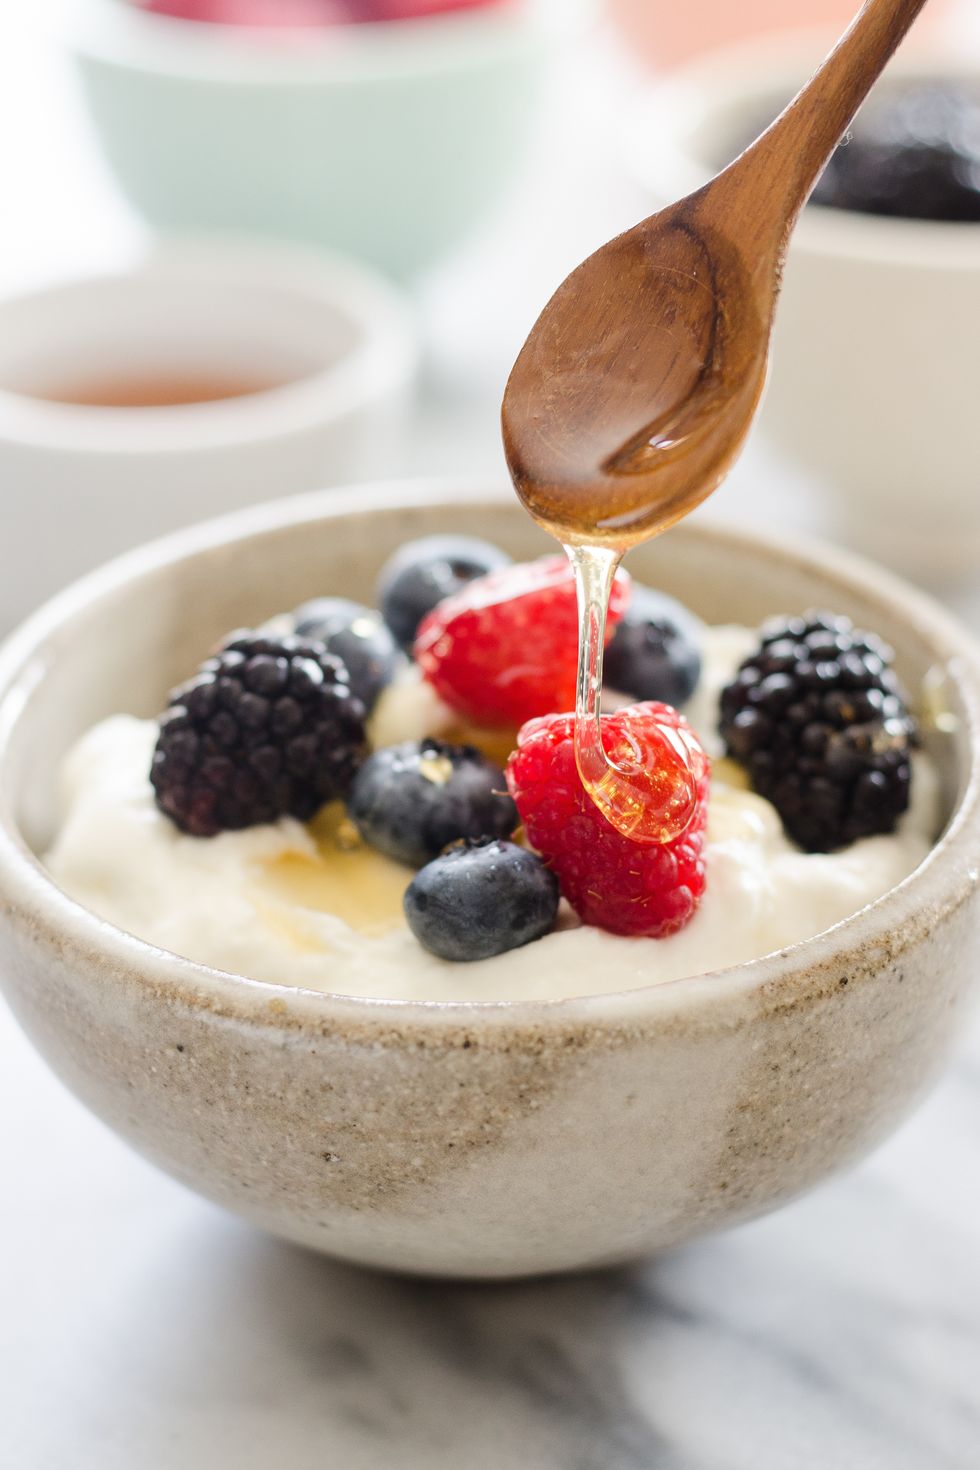 https://hips.hearstapps.com/thepioneerwoman/wp-content/uploads/2017/04/how-to-make-yogurt-and-greek-yogurt-23.jpg?resize=980:*